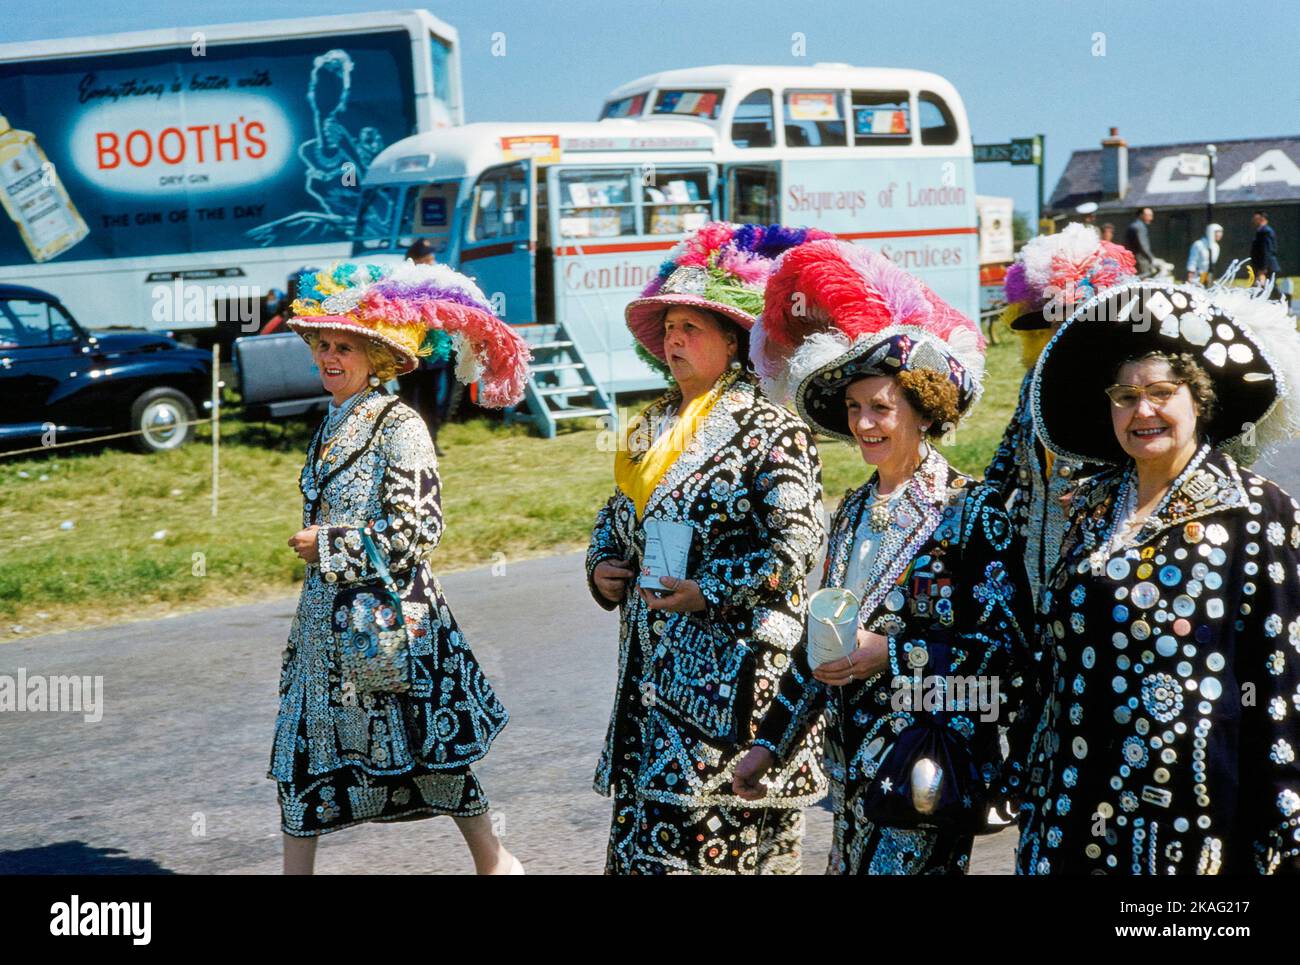 Quattro donne che indossano giacche e camicie con bottoni di diverse dimensioni cuciti su di loro frequentando English Derby, Epsom Downs Racecourse, Epsom, Surrey, Inghilterra, UK, toni Frissell Collection, 3 giugno 1959 Foto Stock